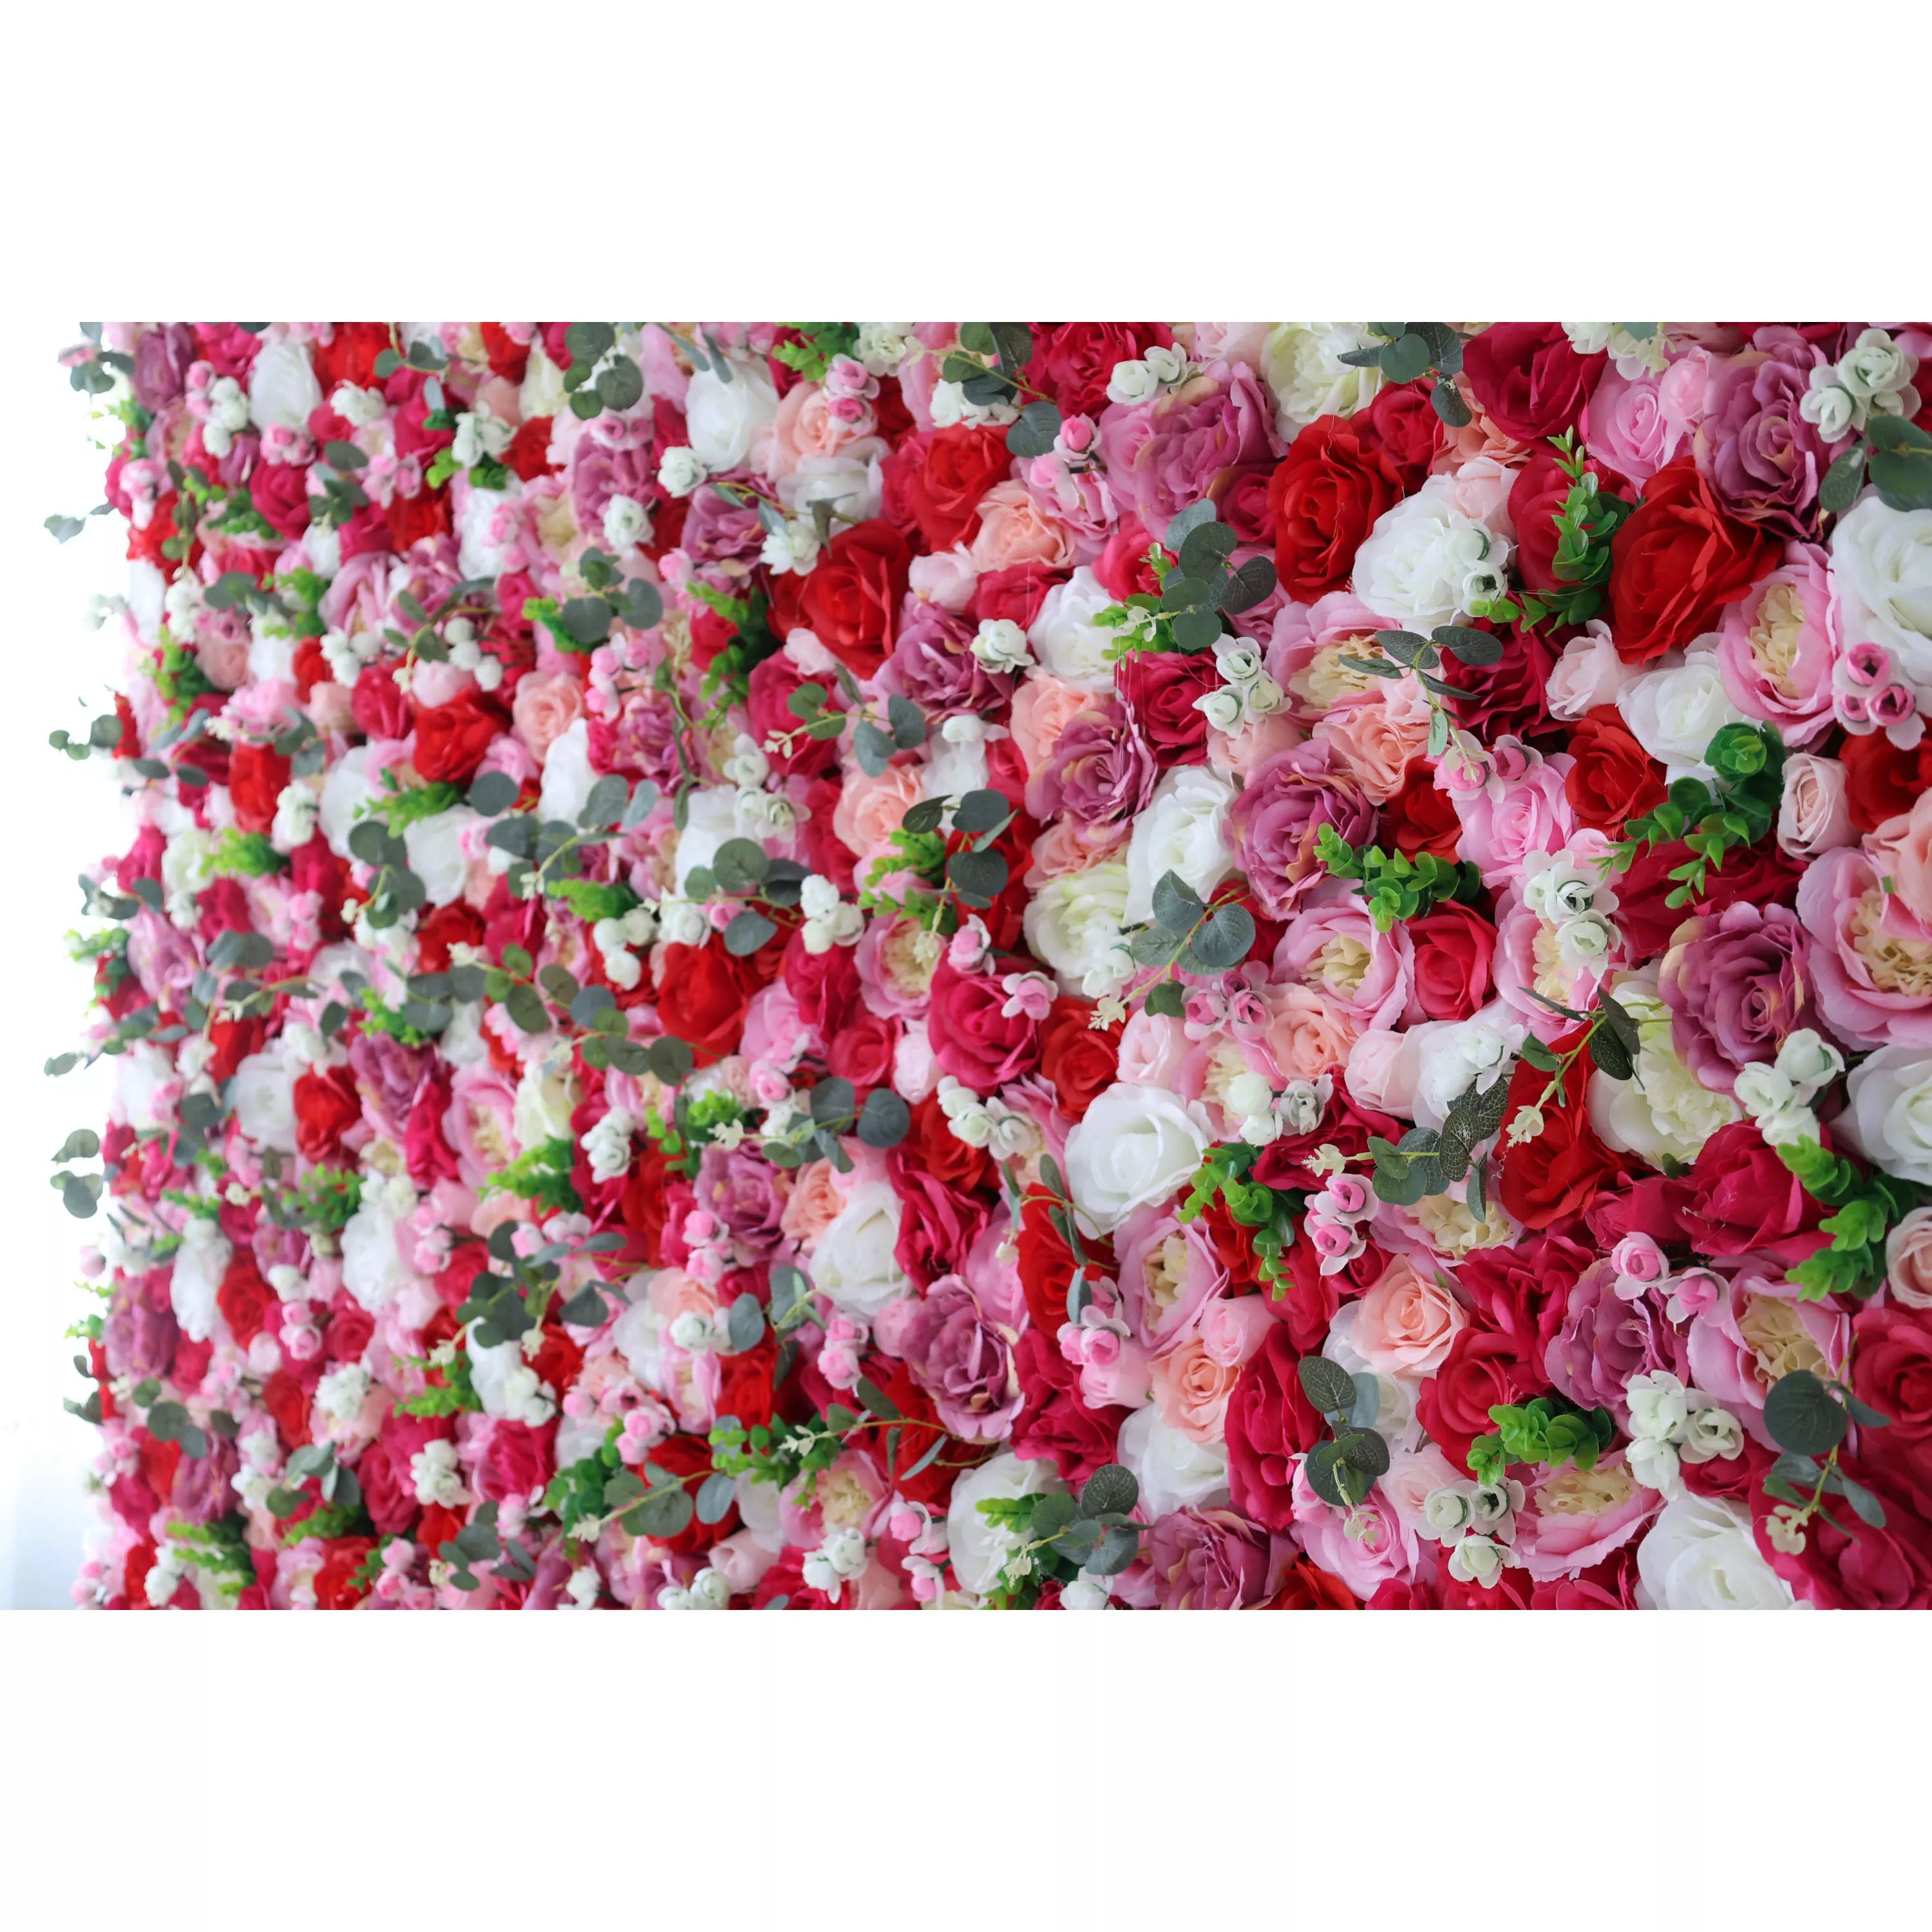 زهور الفالار لفافة قماش من خشب الورد الصناعي ورود حمراء وورود بيضاء مع خضار مموه جدارية للزفاف ، ديكور حفلات زهور ، خلفية للحفلات ، مناسبة